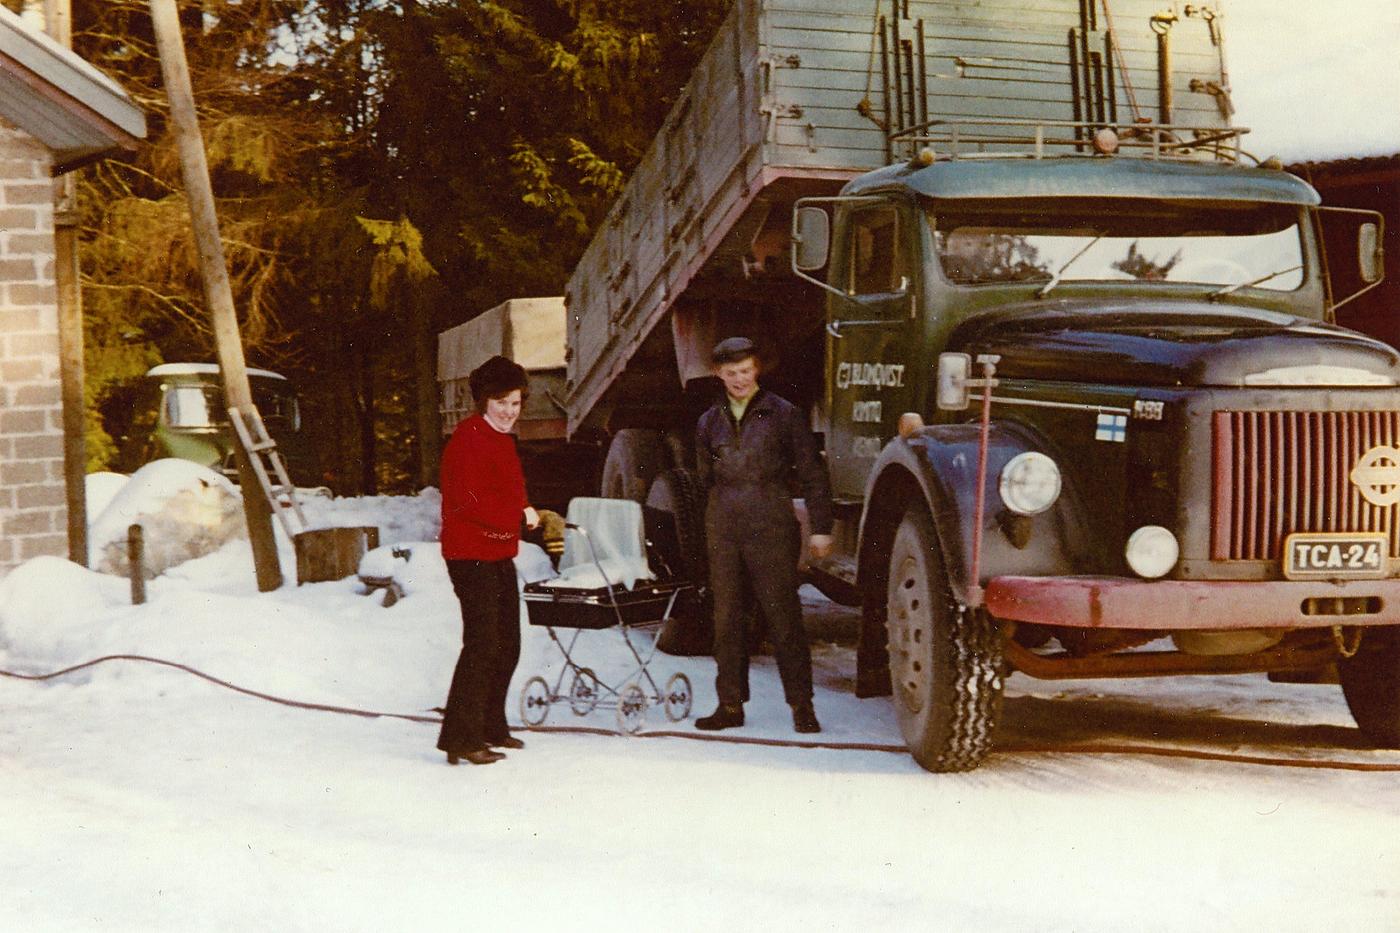 Ett gammalt fotografi föreställande en kvinna och en man med baby i en vagn och en lastbil i bakgrunden.